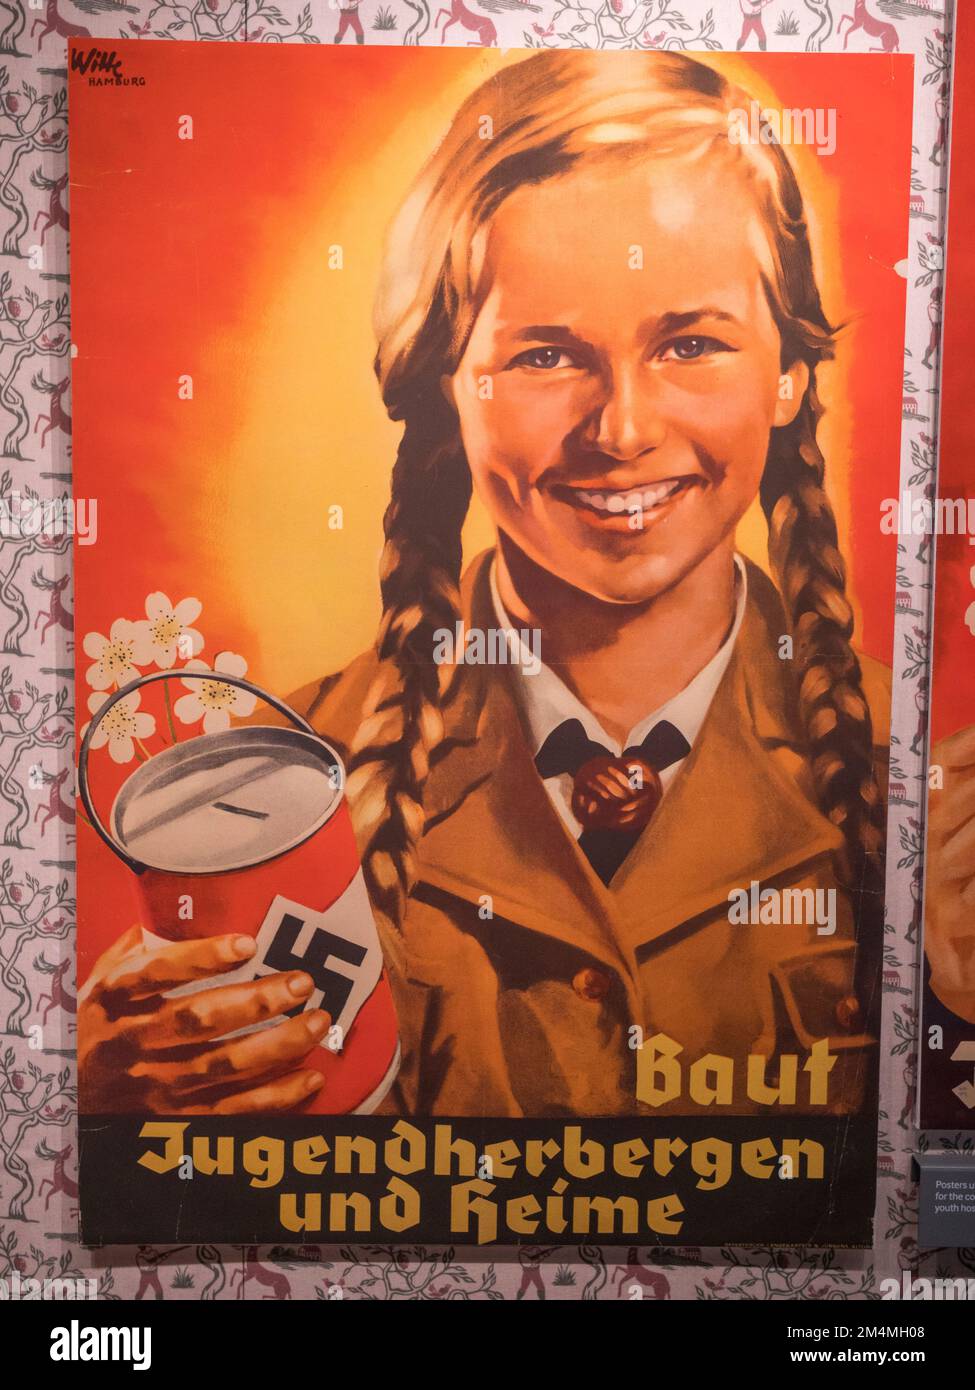 'Baut Jugendherberge und Heime', ('construire des auberges de jeunesse'), affiche de propagande nazie pour recueillir des fonds pour les auberges de jeunesse, Imperial War Museum, Londres, Royaume-Uni. Banque D'Images